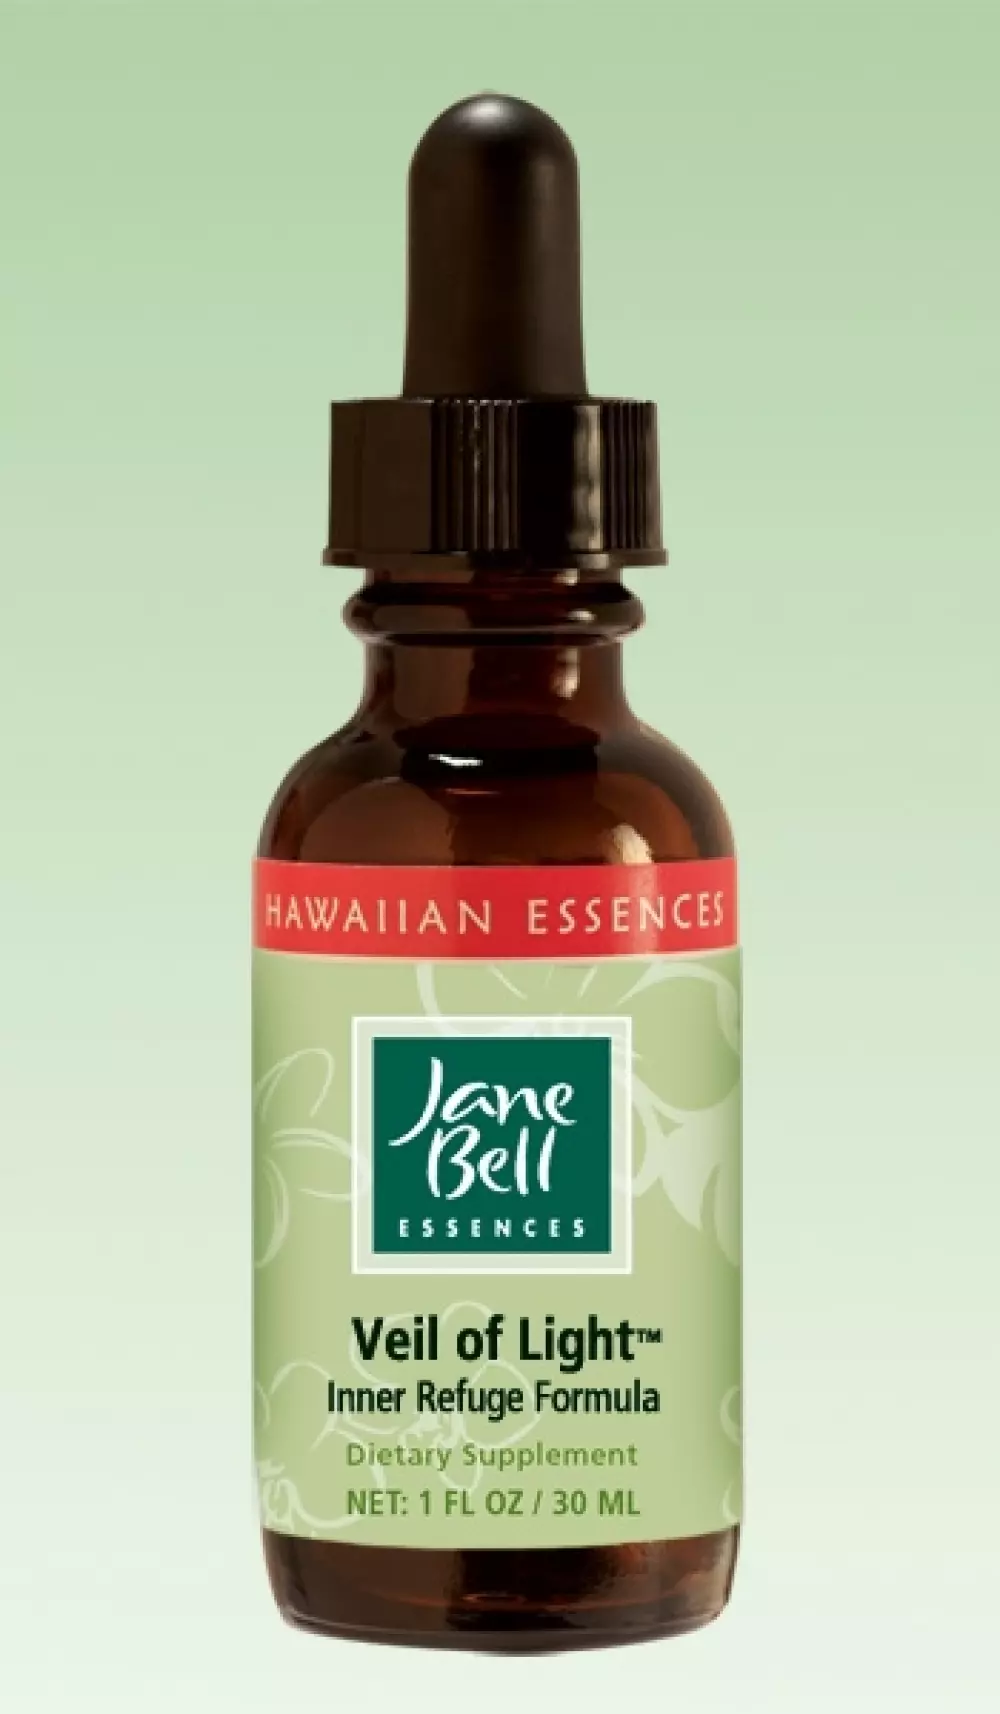 Hawaiian Essences - Veil of Light 30 ml, Velvære & røkelse, Essenser (Vibrasjonell medisin), Jane Bell Inner Refuge Formula